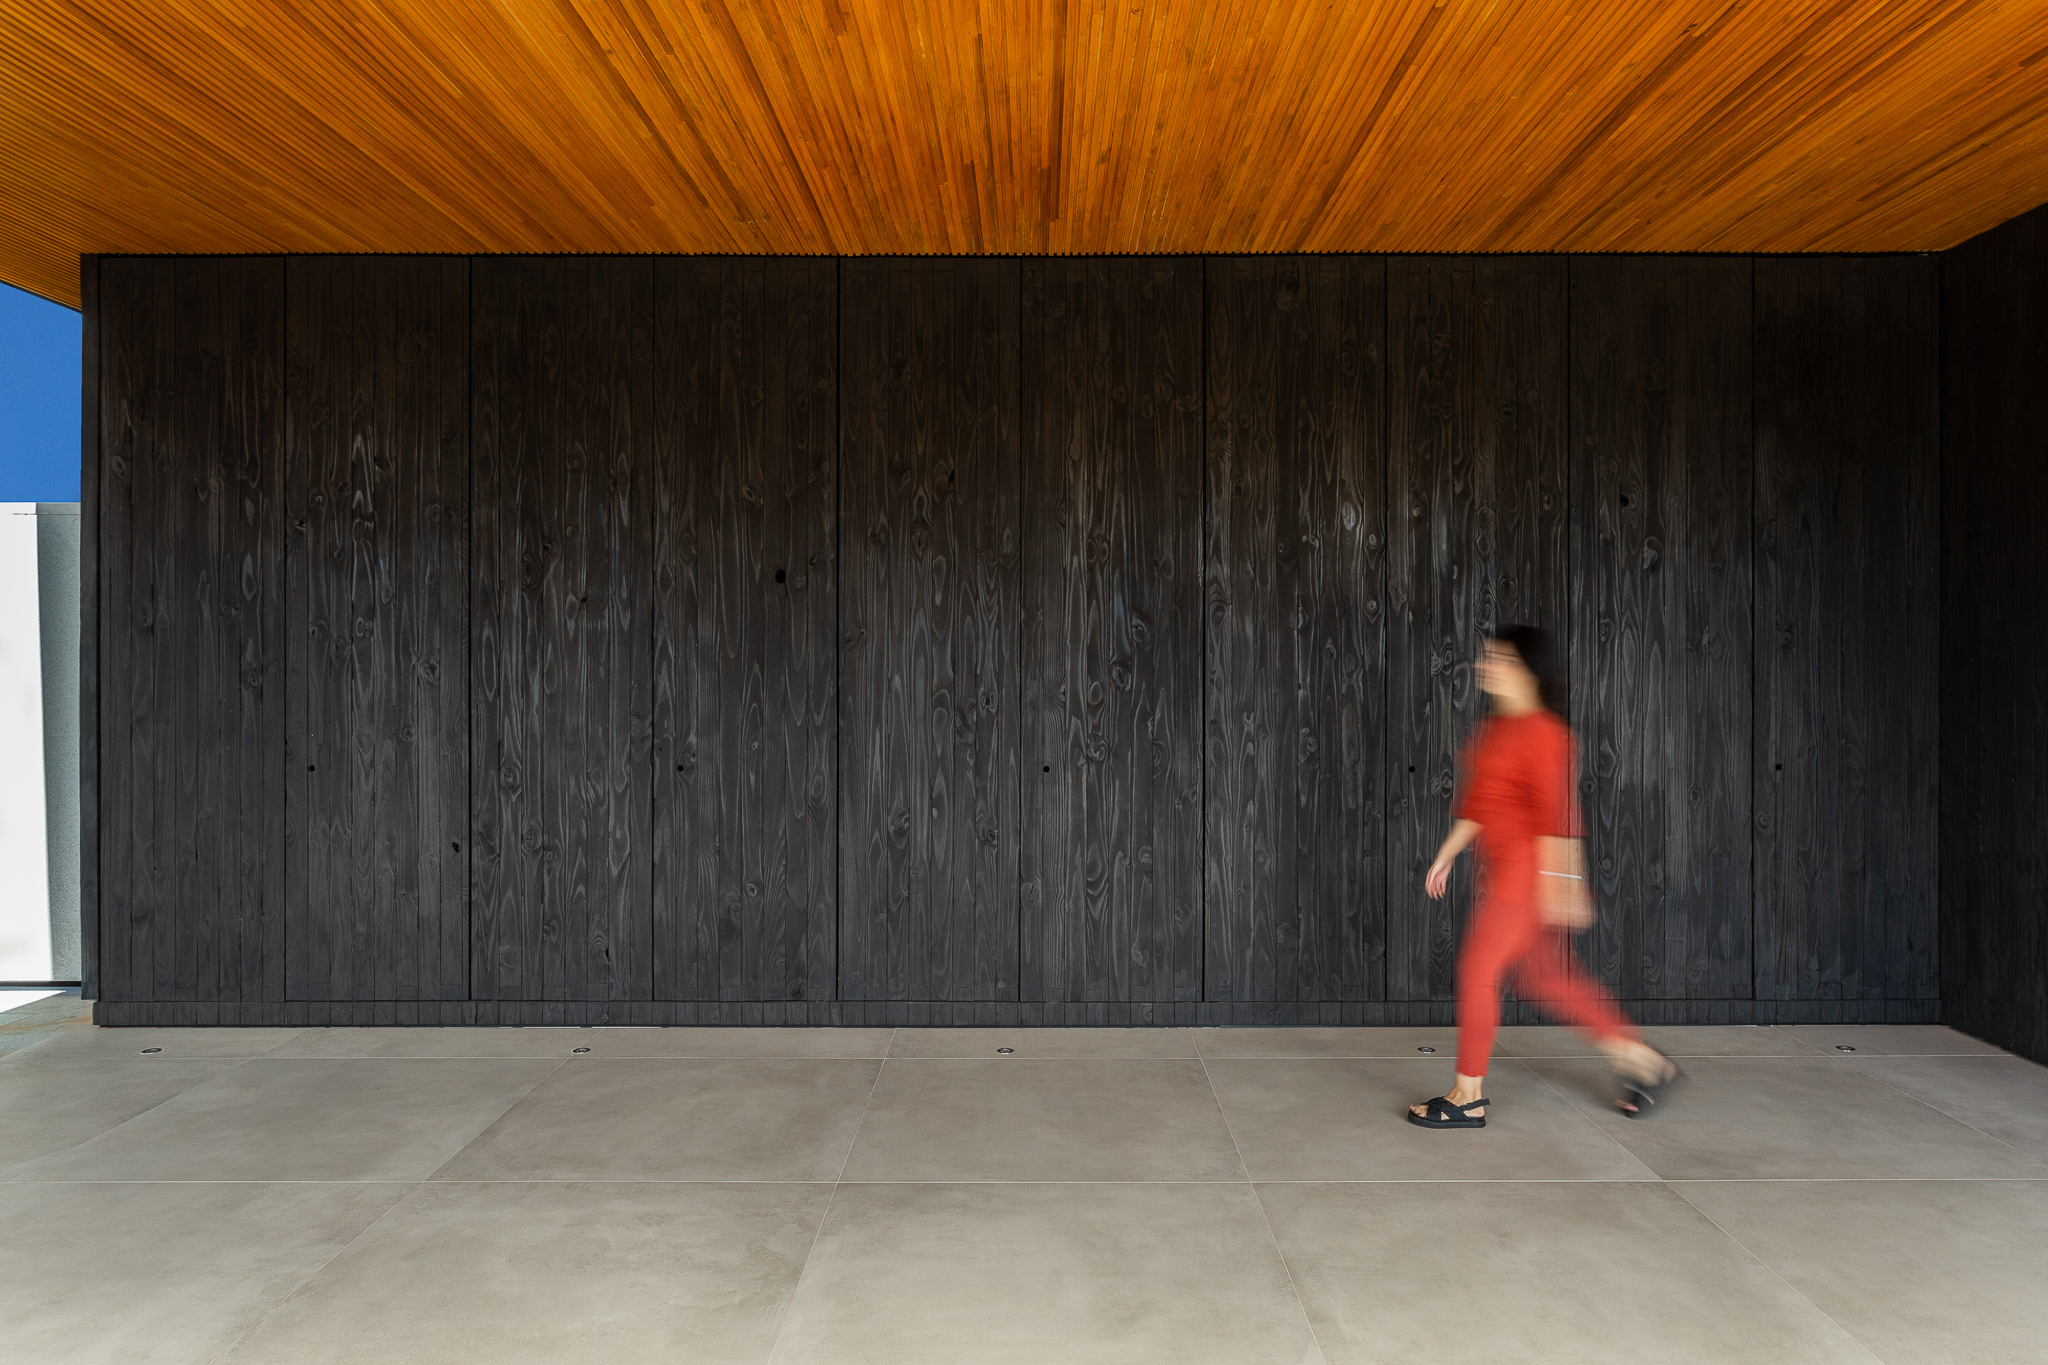 Casa de 379 m² une arquitetura minimalista e integração com o entorno. Projeto Camila Porto. Na foto, parede de shou sugi ban.